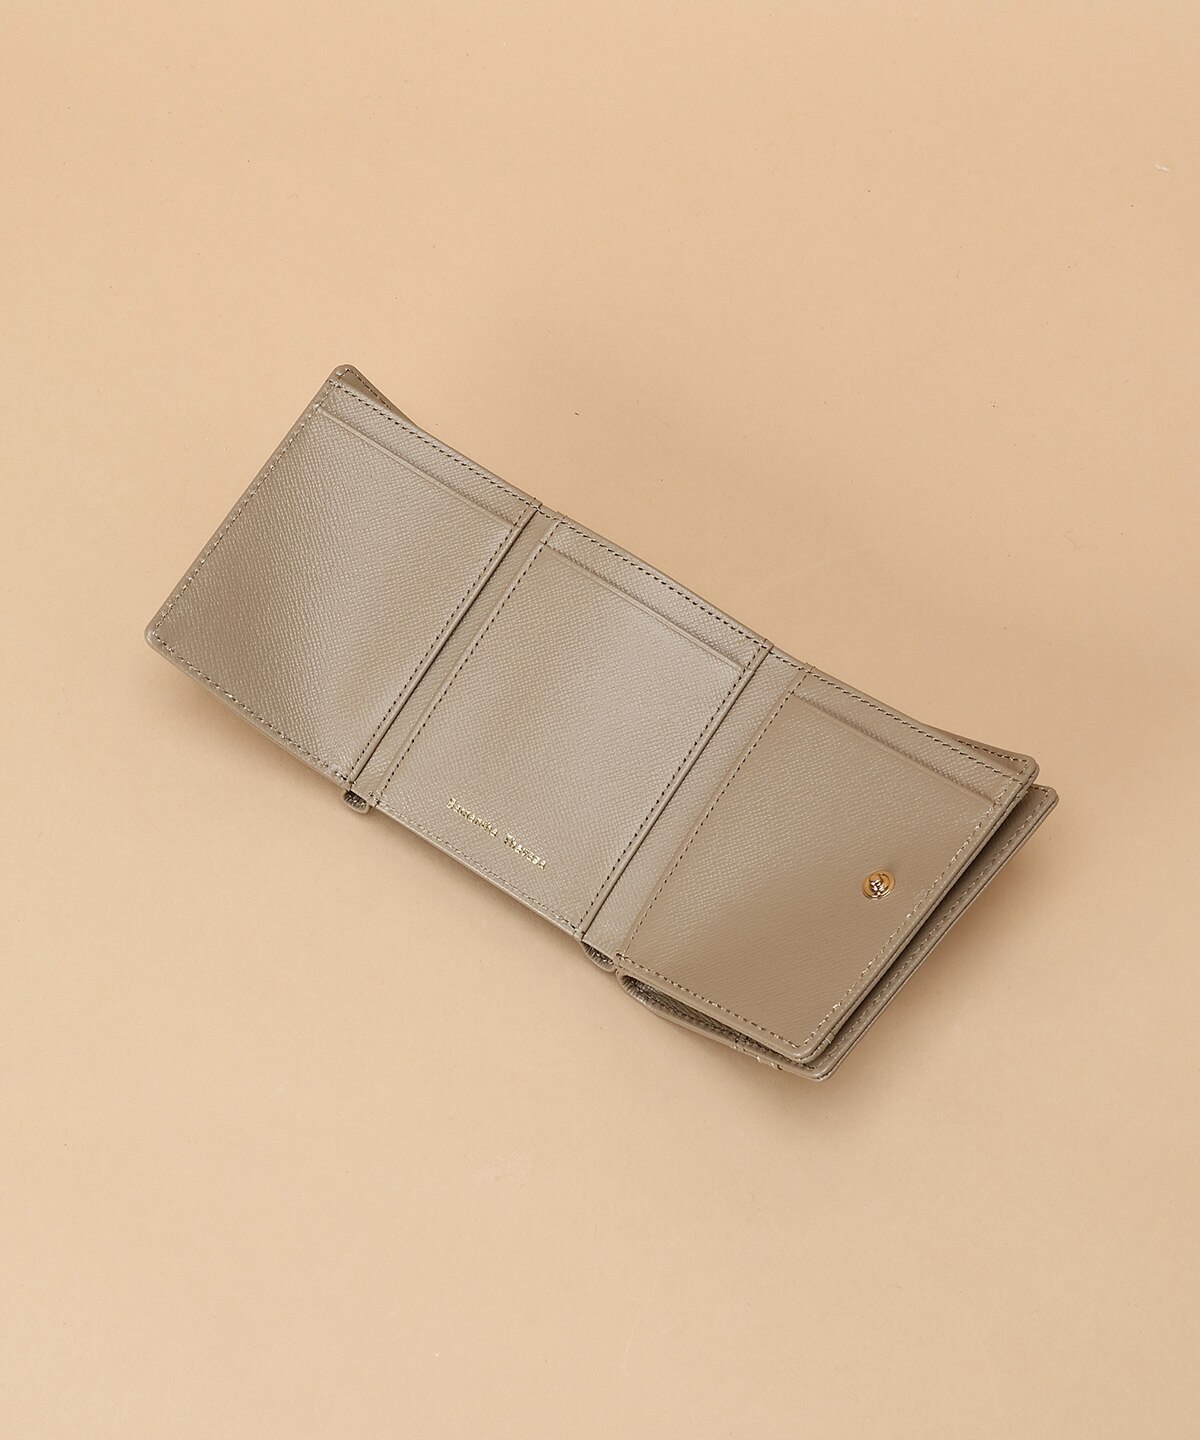 ベルトデザイン 三つ折り財布|Samantha Thavasa(サマンサタバサ)の通販